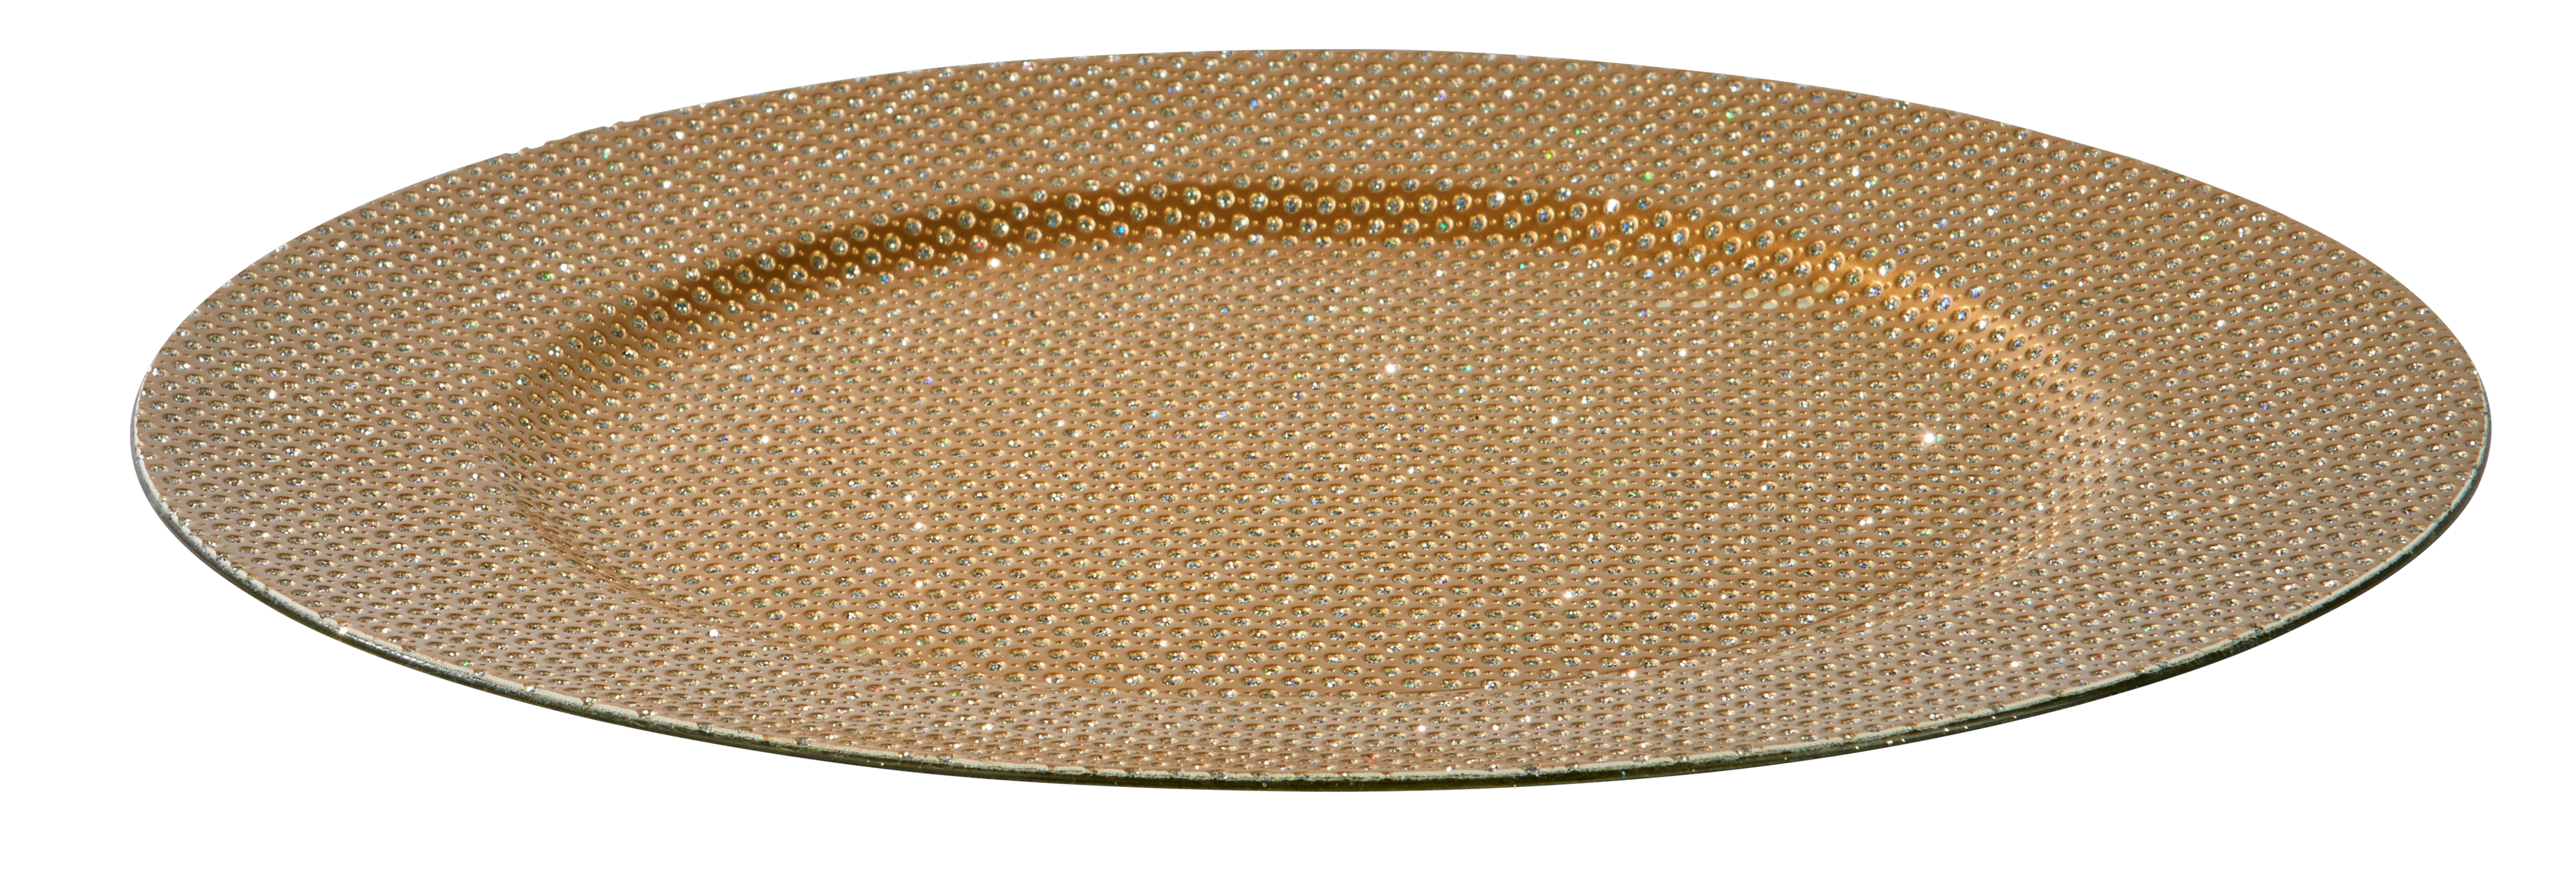 Plato decorativo dorado 33 cm 